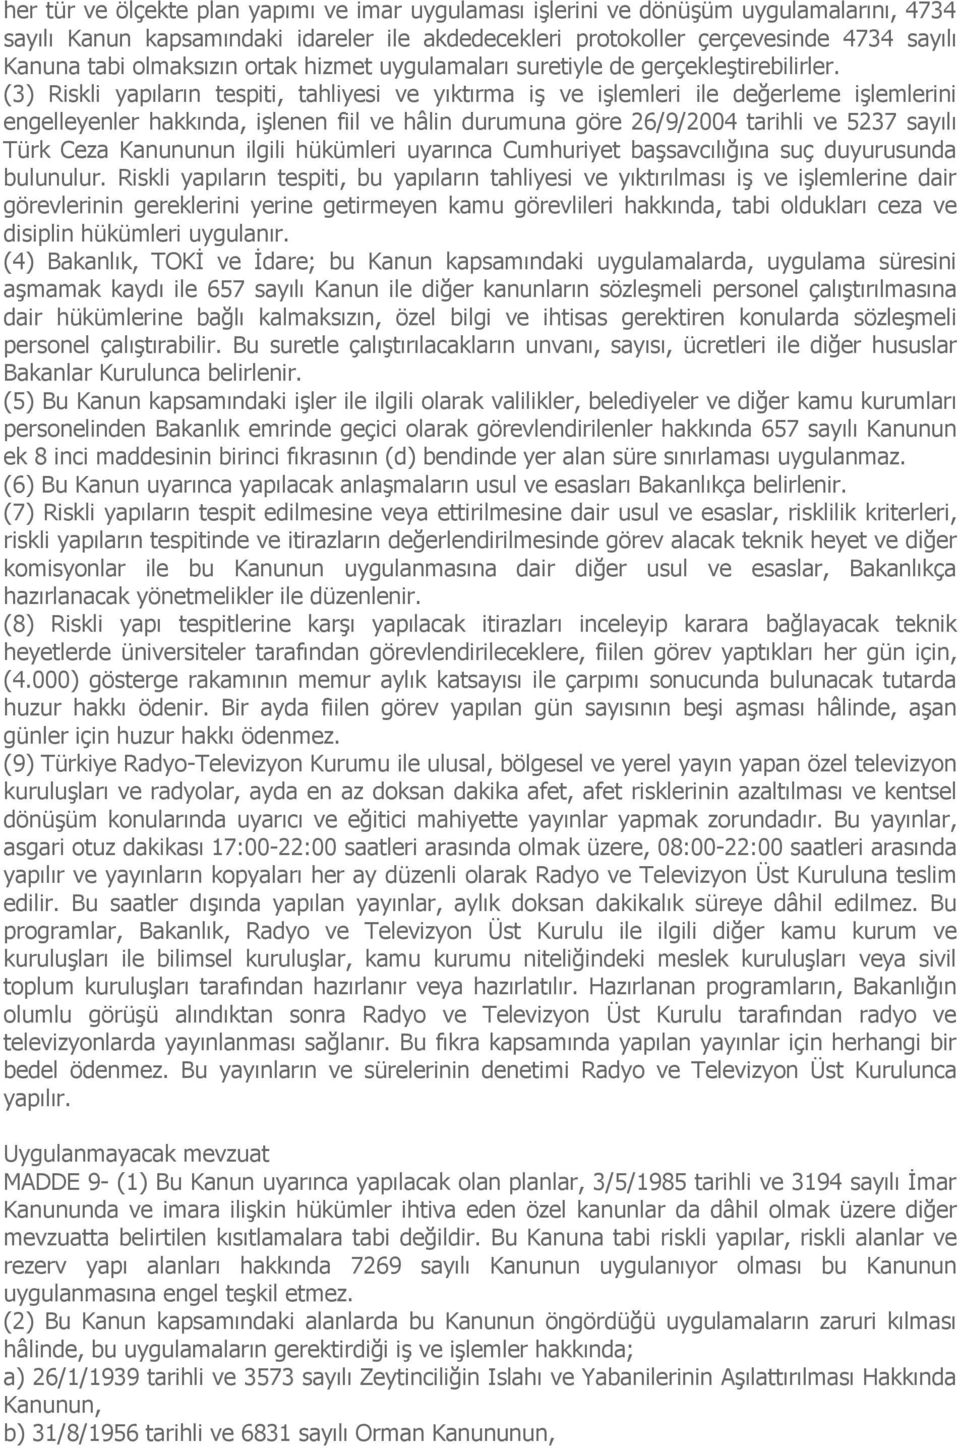 (3) Riskli yapıların tespiti, tahliyesi ve yıktırma iş ve işlemleri ile değerleme işlemlerini engelleyenler hakkında, işlenen fiil ve hâlin durumuna göre 26/9/2004 tarihli ve 5237 sayılı Türk Ceza